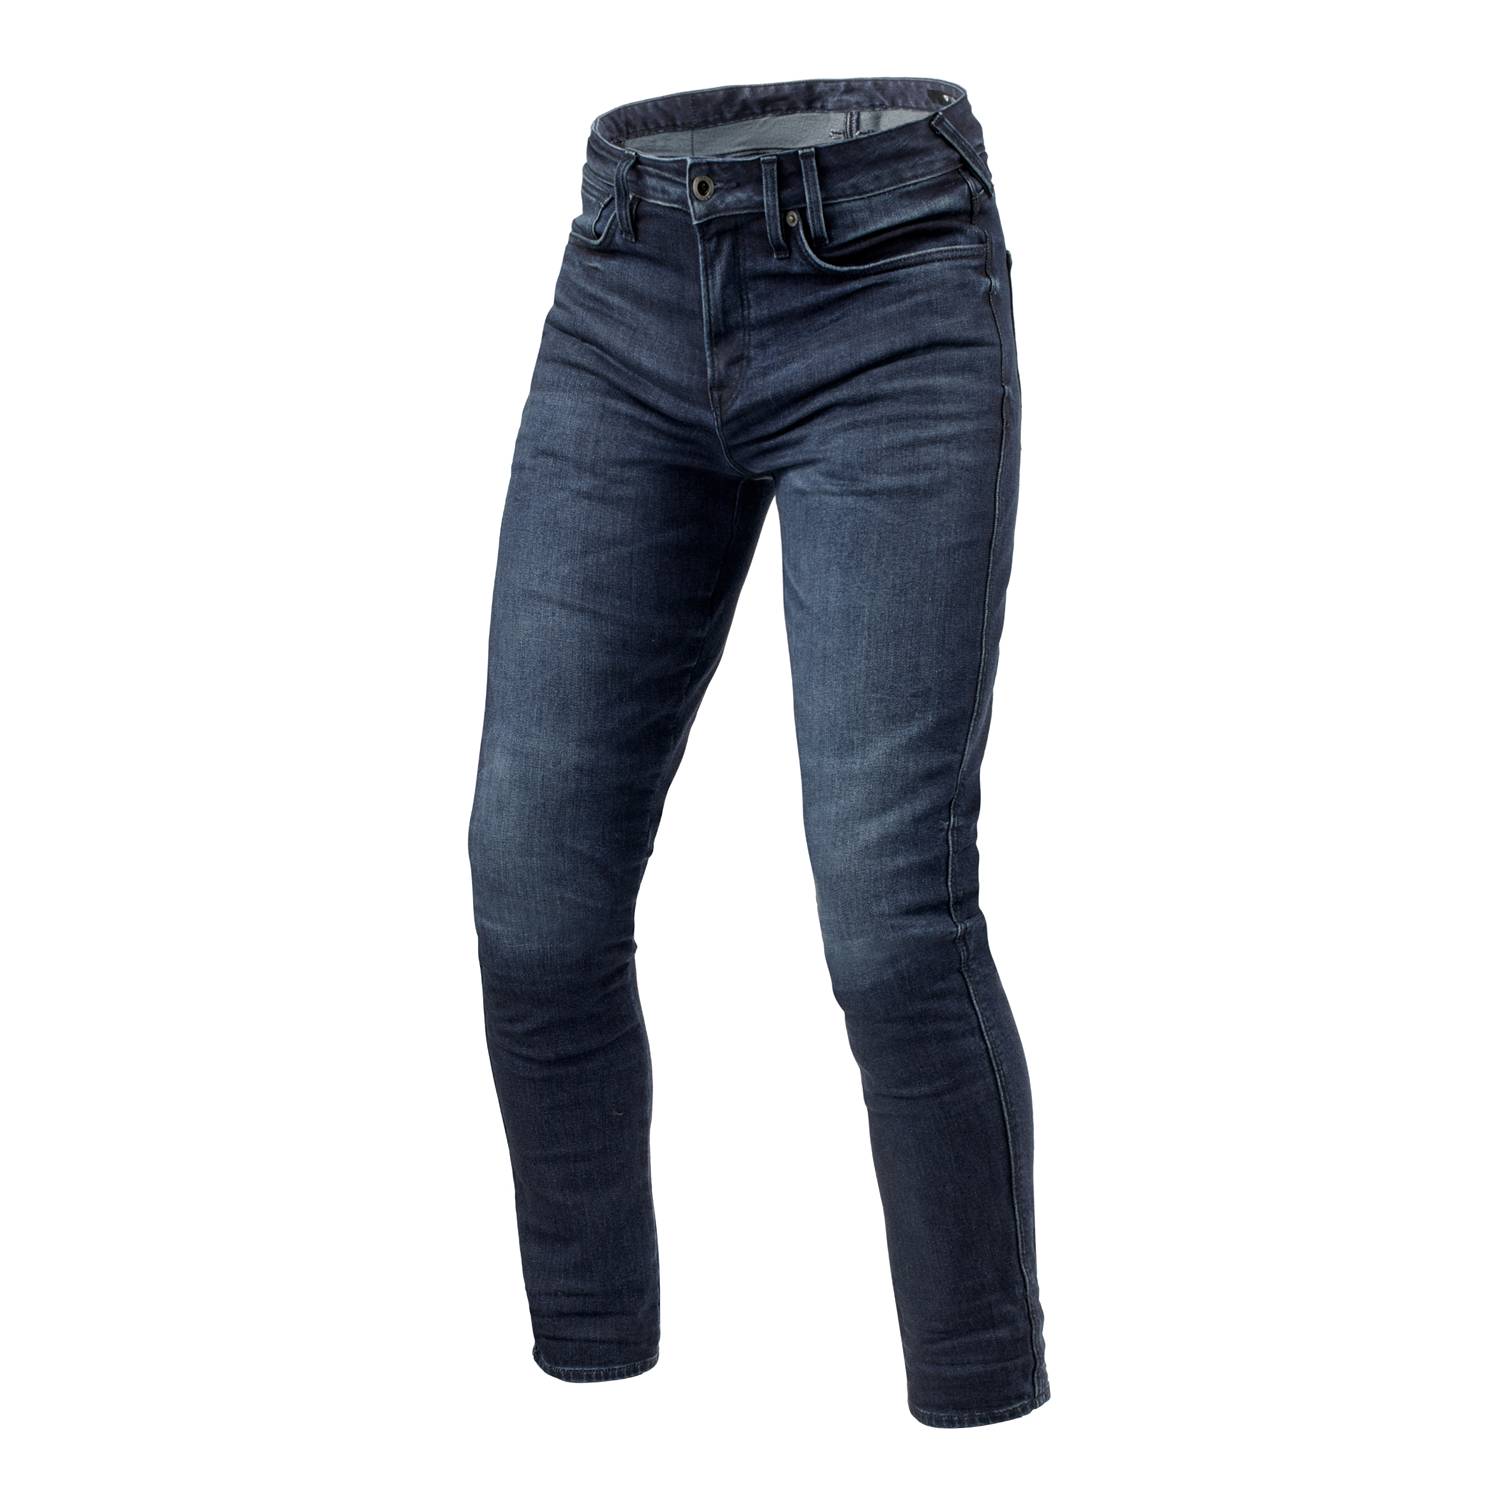 Image of REV'IT! Jeans Carlin SK Dark Blue Used L36 Motorcycle Jeans Size L36/W34 EN